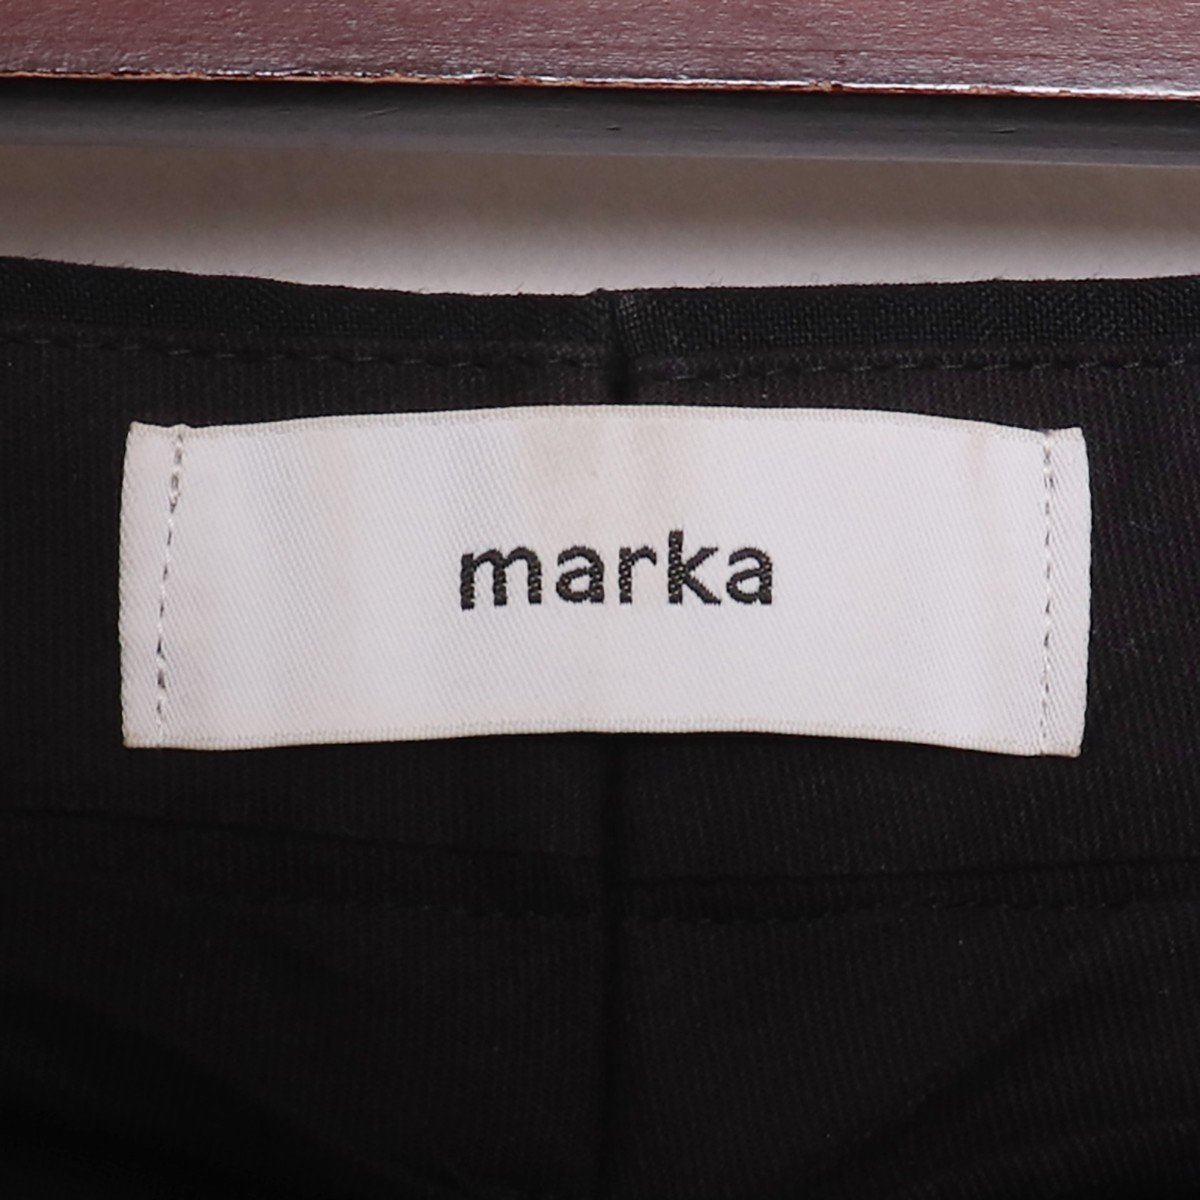 MARKA 19AW 2TUCK SLIM TAPERED FIT サイズ2 ブラック M19A-12PT01C マーカ 2タックスリムテーパードパンツ スラックス_画像3